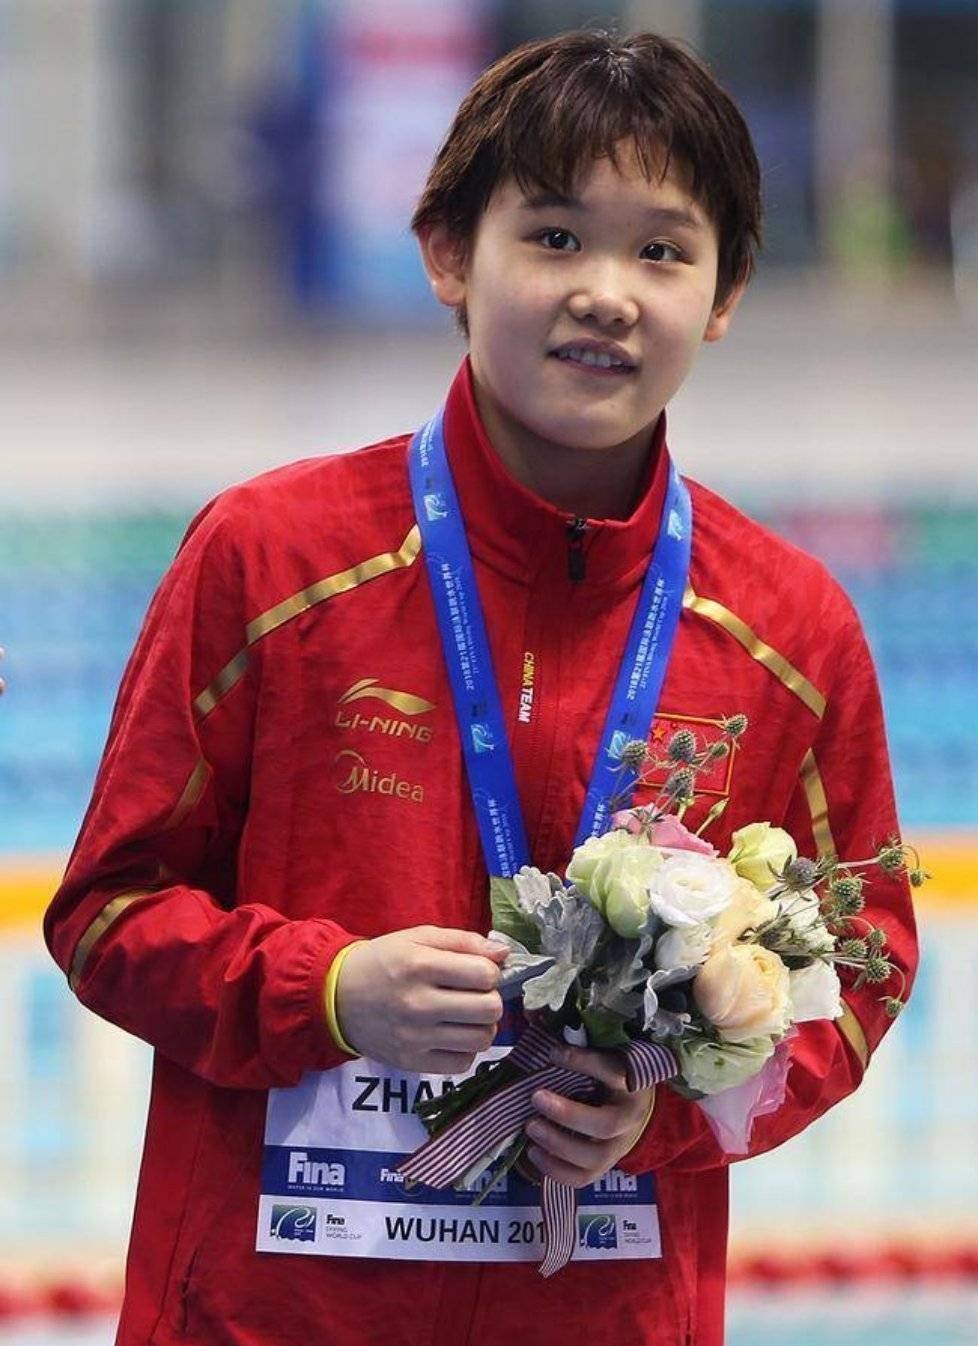 Zhang jiaqi